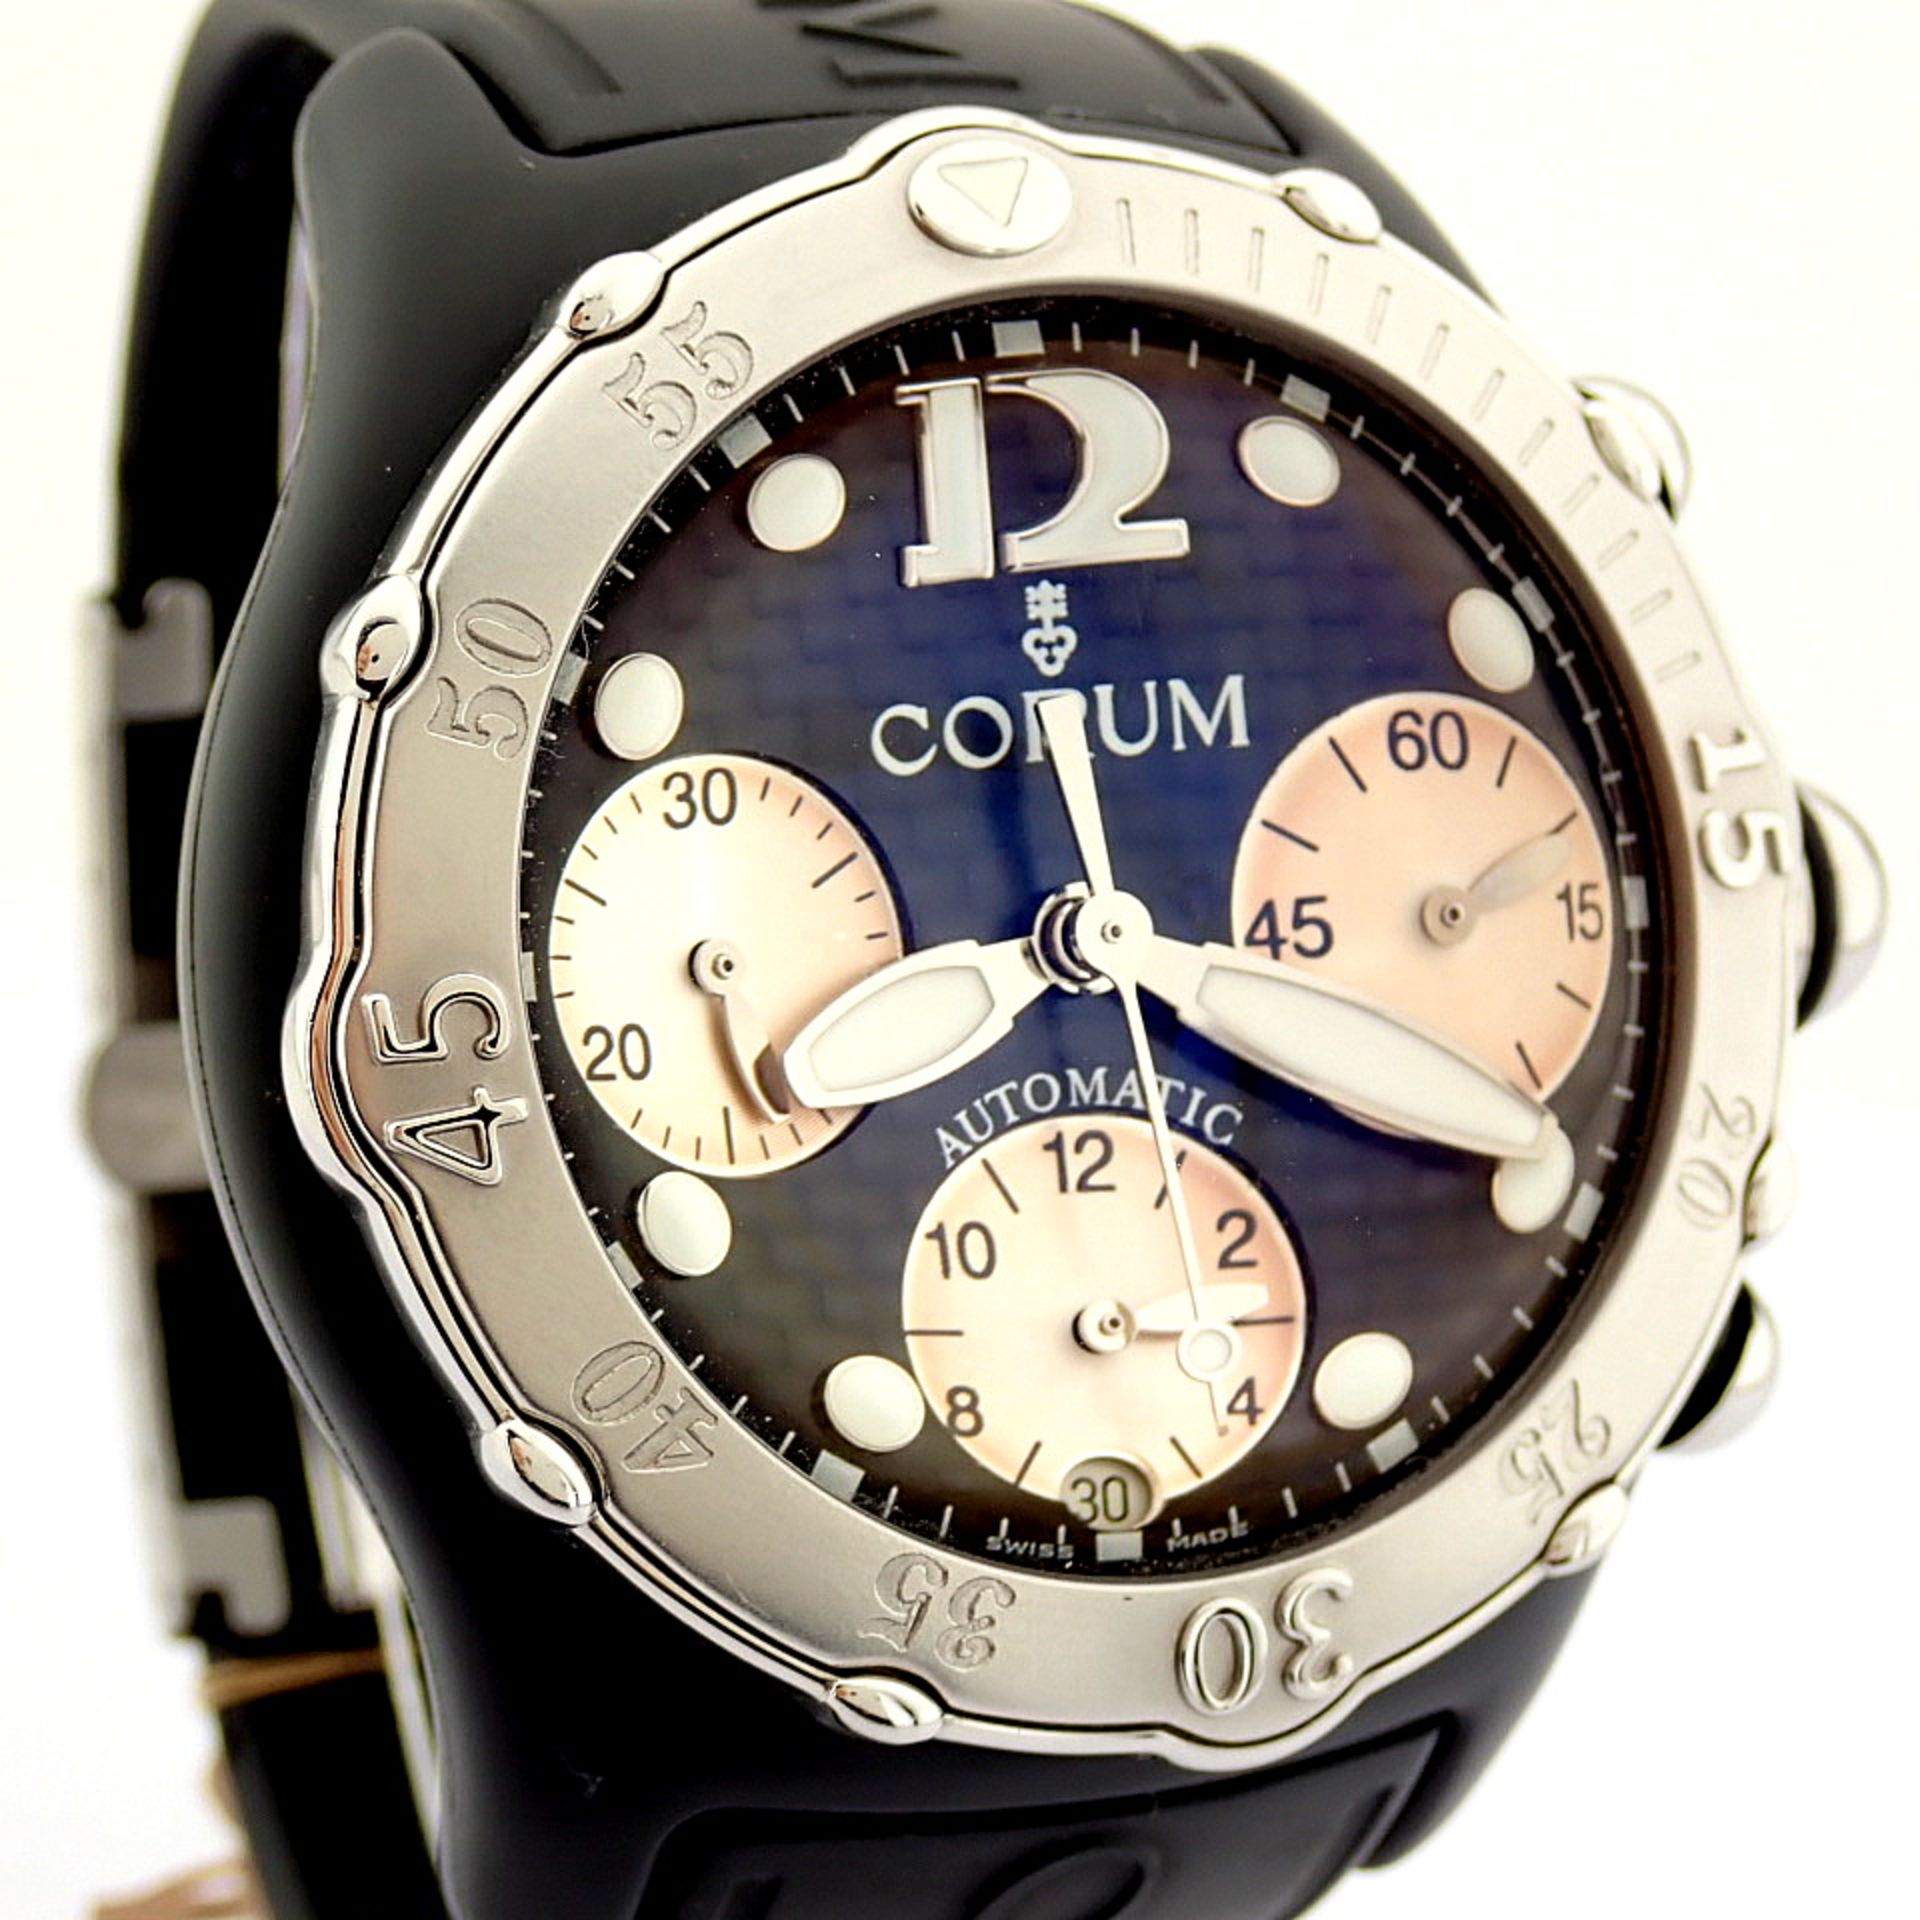 Corum / Midnight Chronograph Diver Taucher - Gentlmen's Steel Wrist Watch - Image 5 of 12